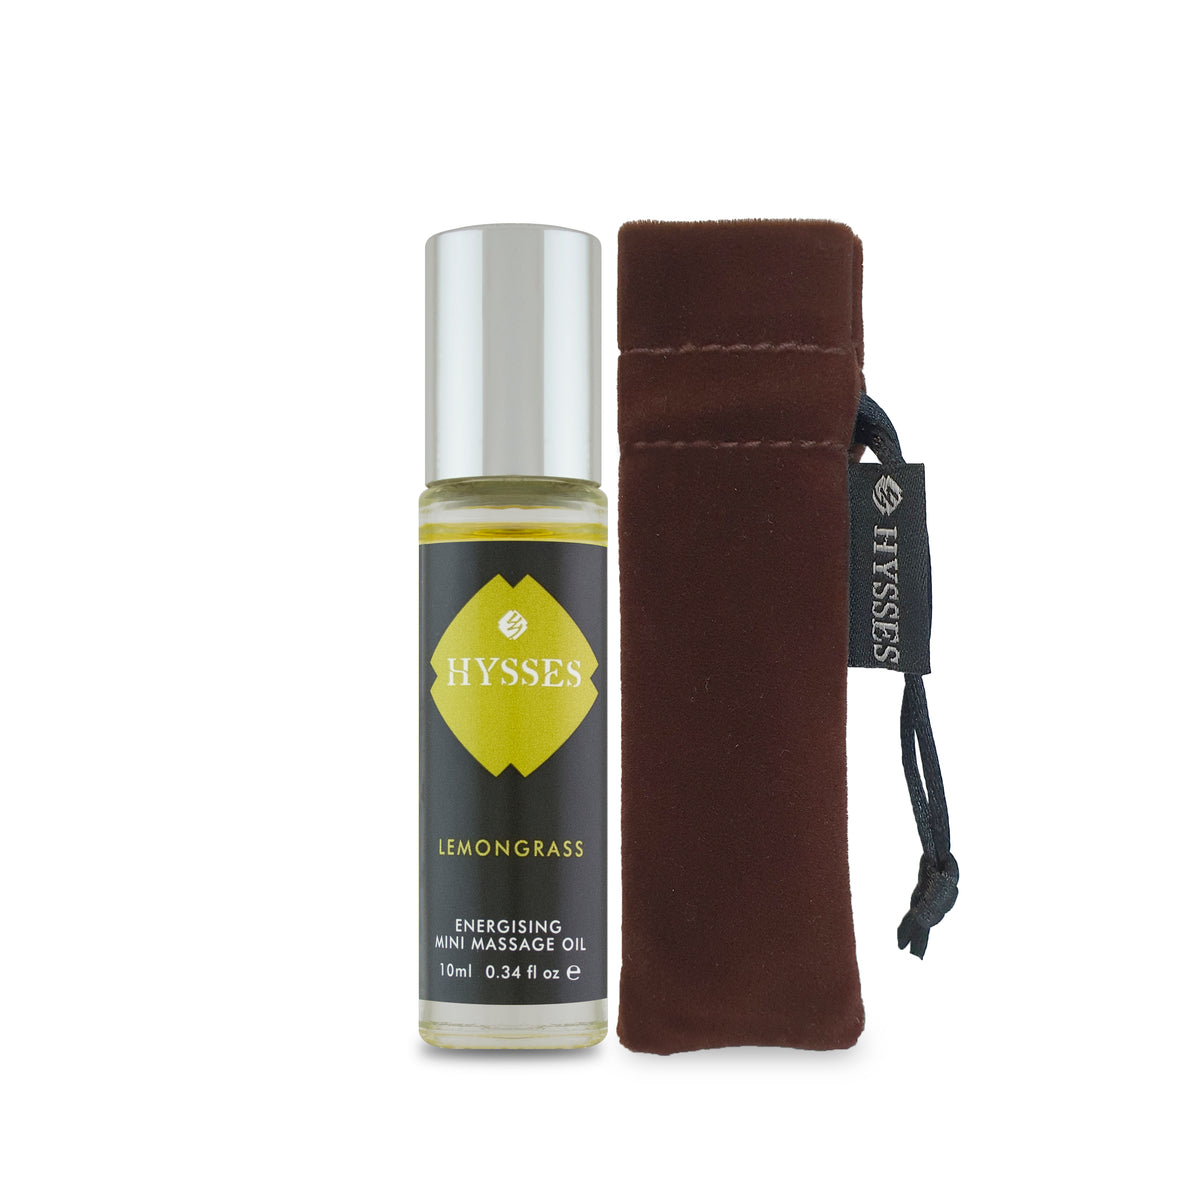 Mini Massage Oil Lemongrass - HYSSES